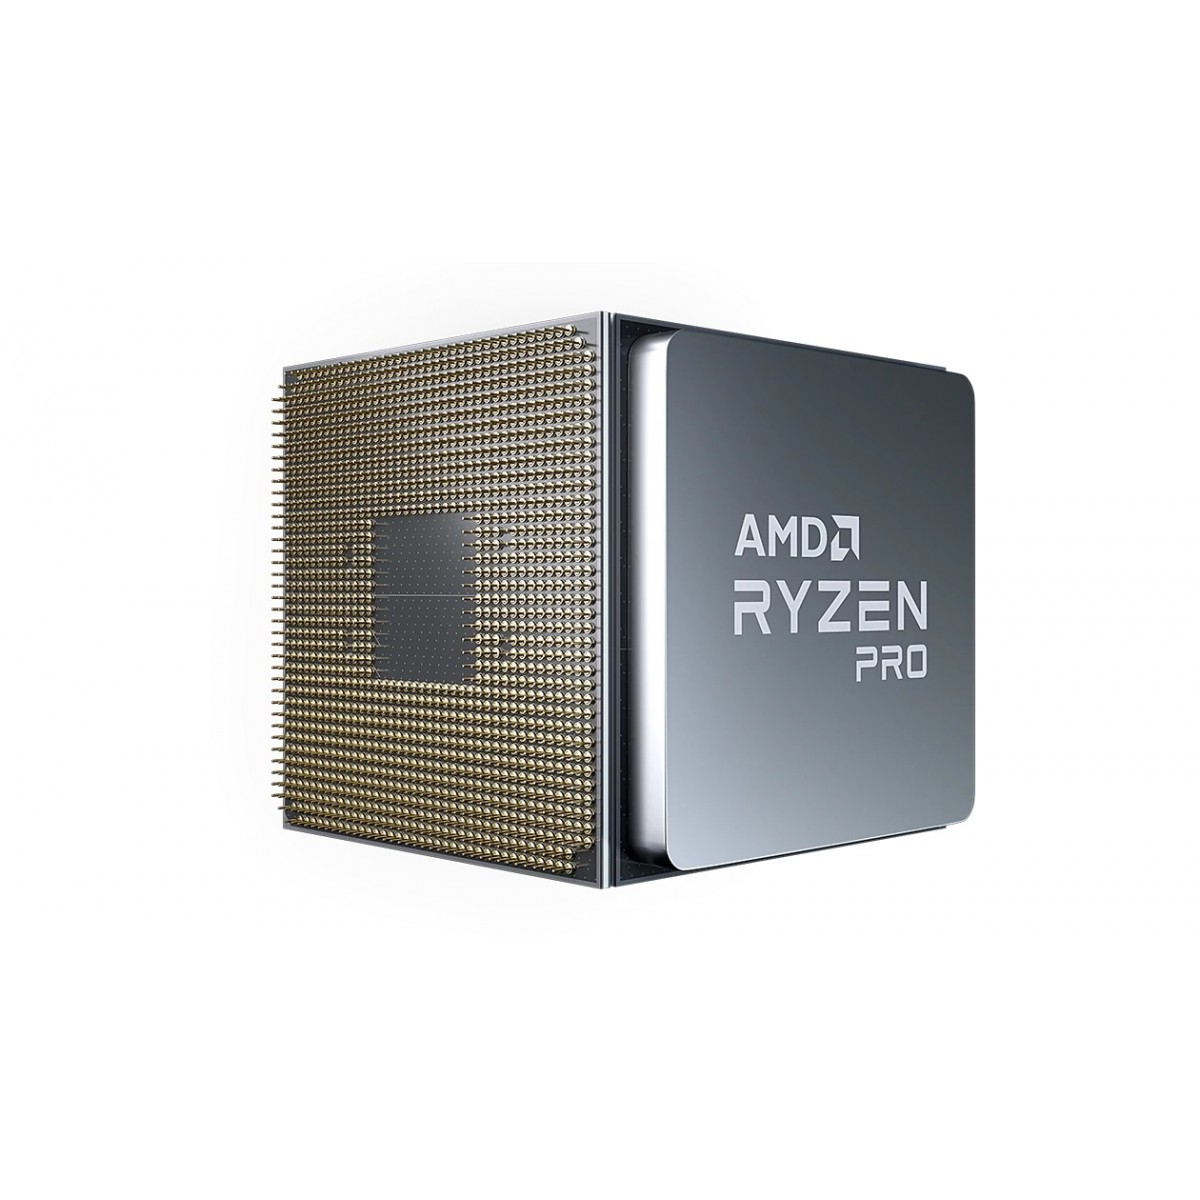 AMD Ryzen 3 PRO 4350GE - AMD Ryzen 3 PRO - Socket AM4 - PC - 7 nm - AMD - 3.5 GHz